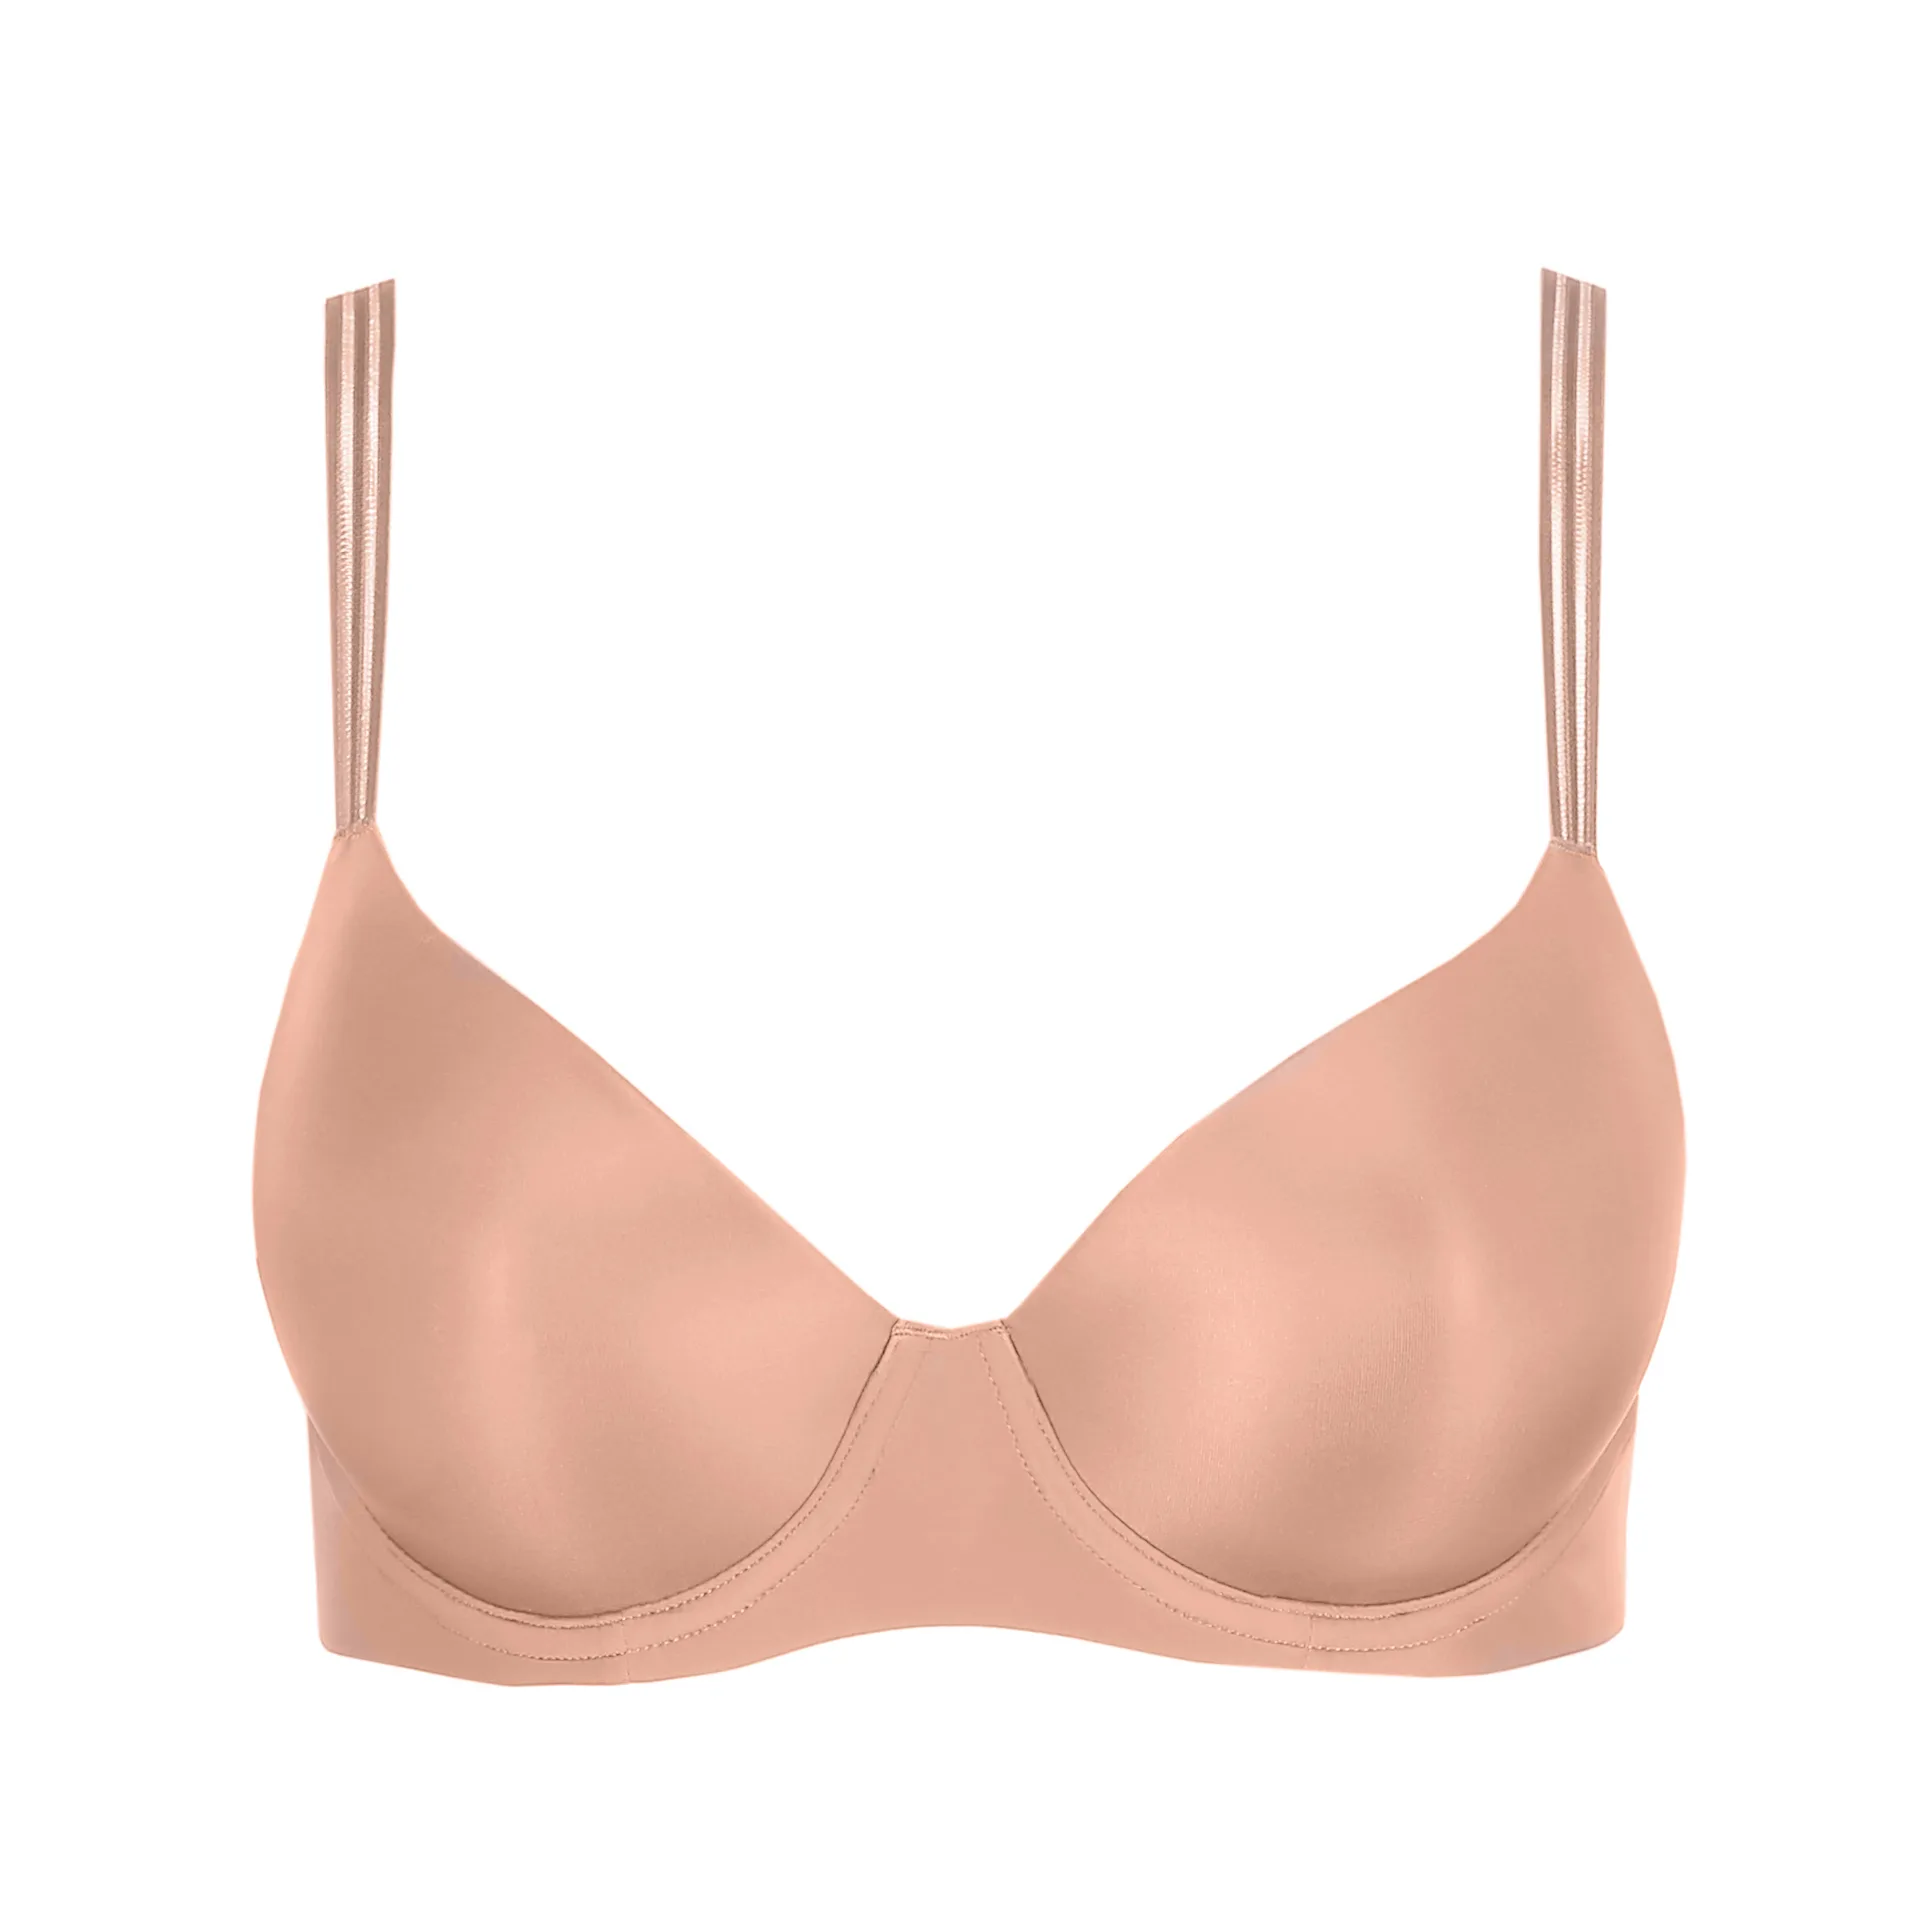 Breathable Mesh Bra Soft net bra summer bra for women – Basic Lingerie